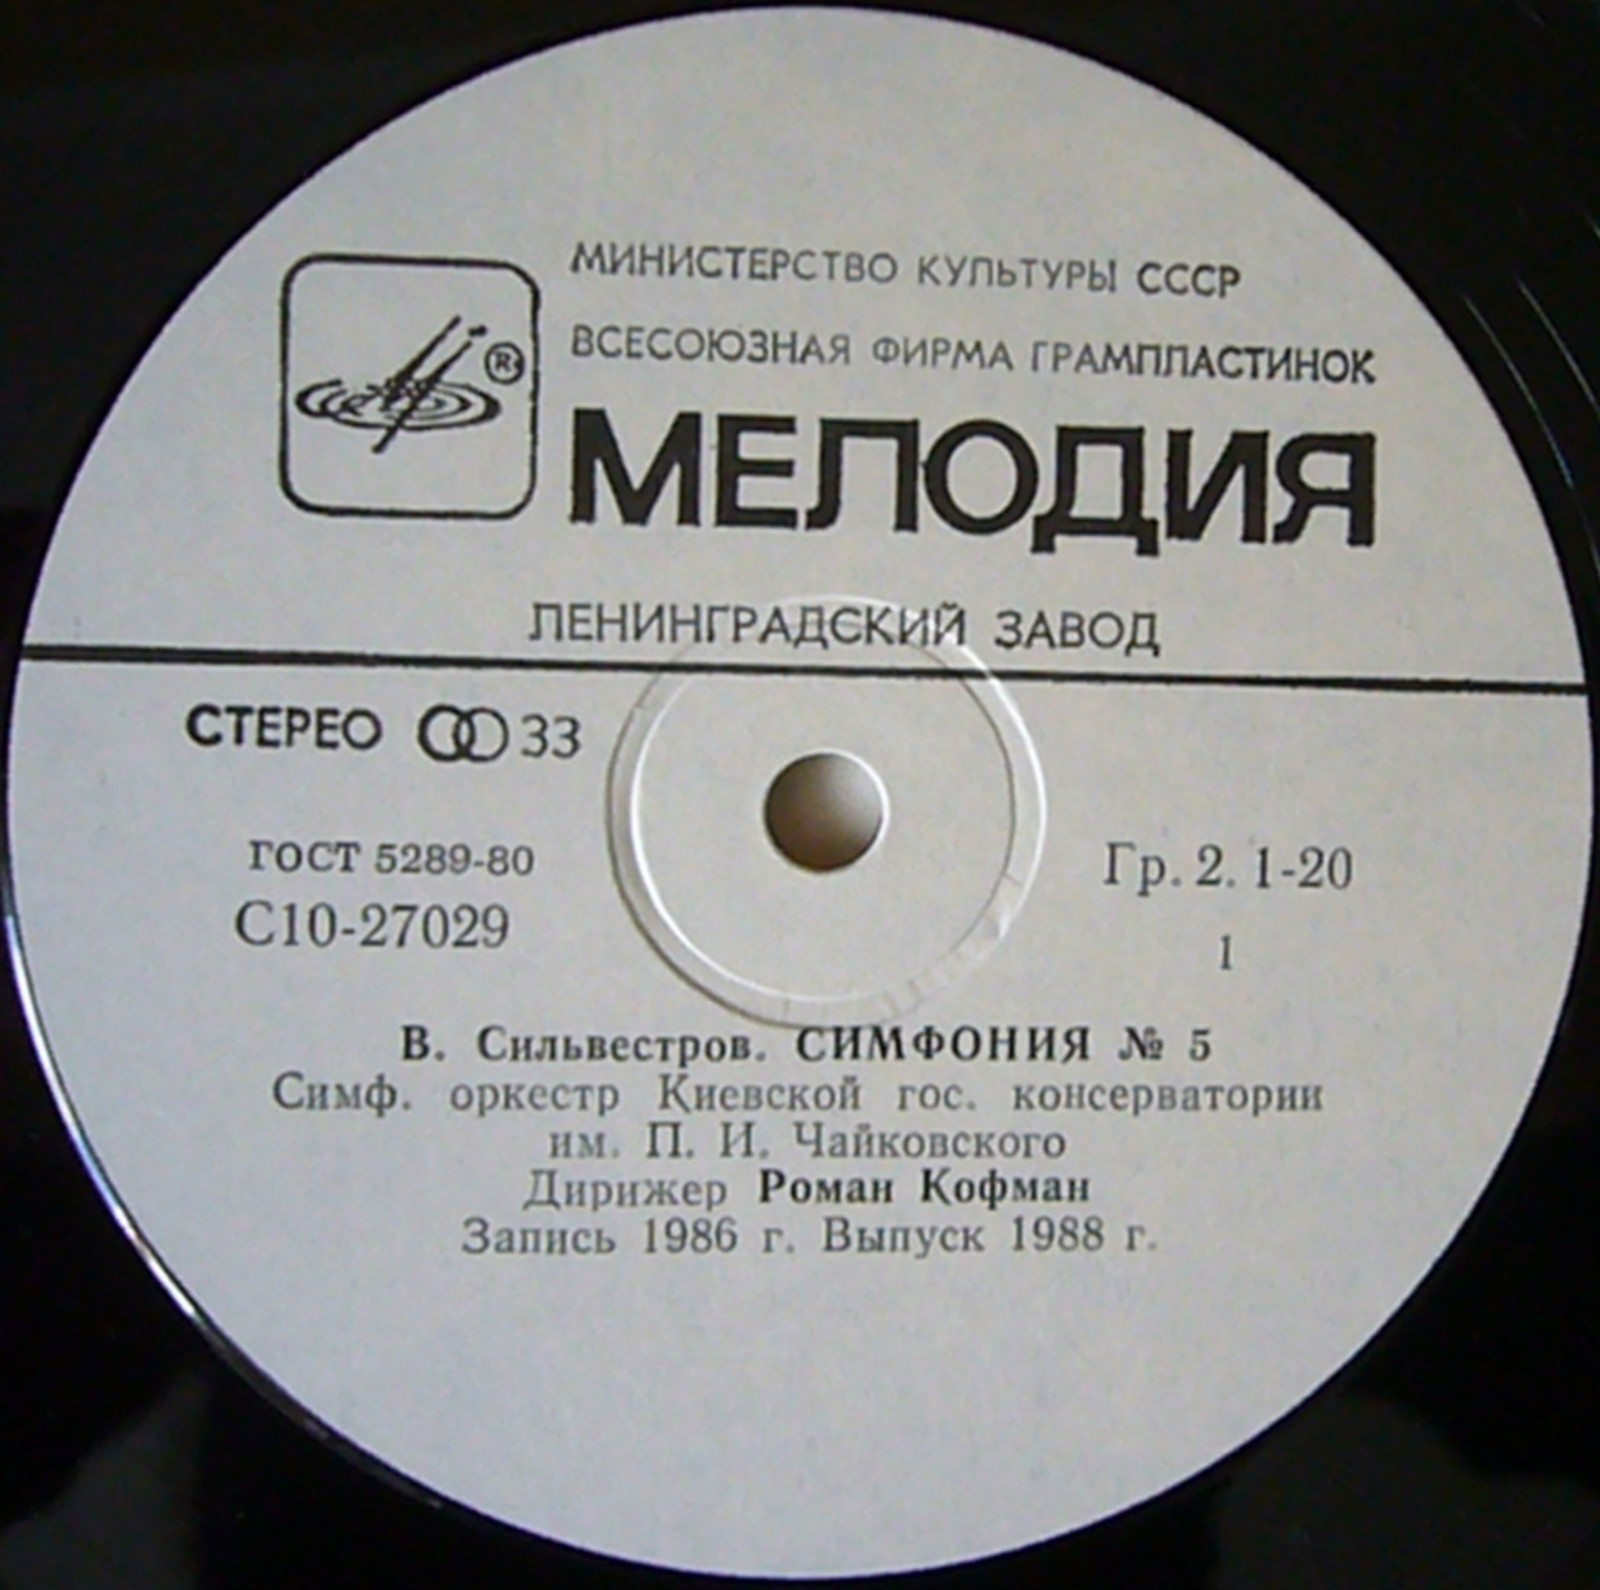 В. СИЛЬВЕСТРОВ (1937): Симфония № 5.